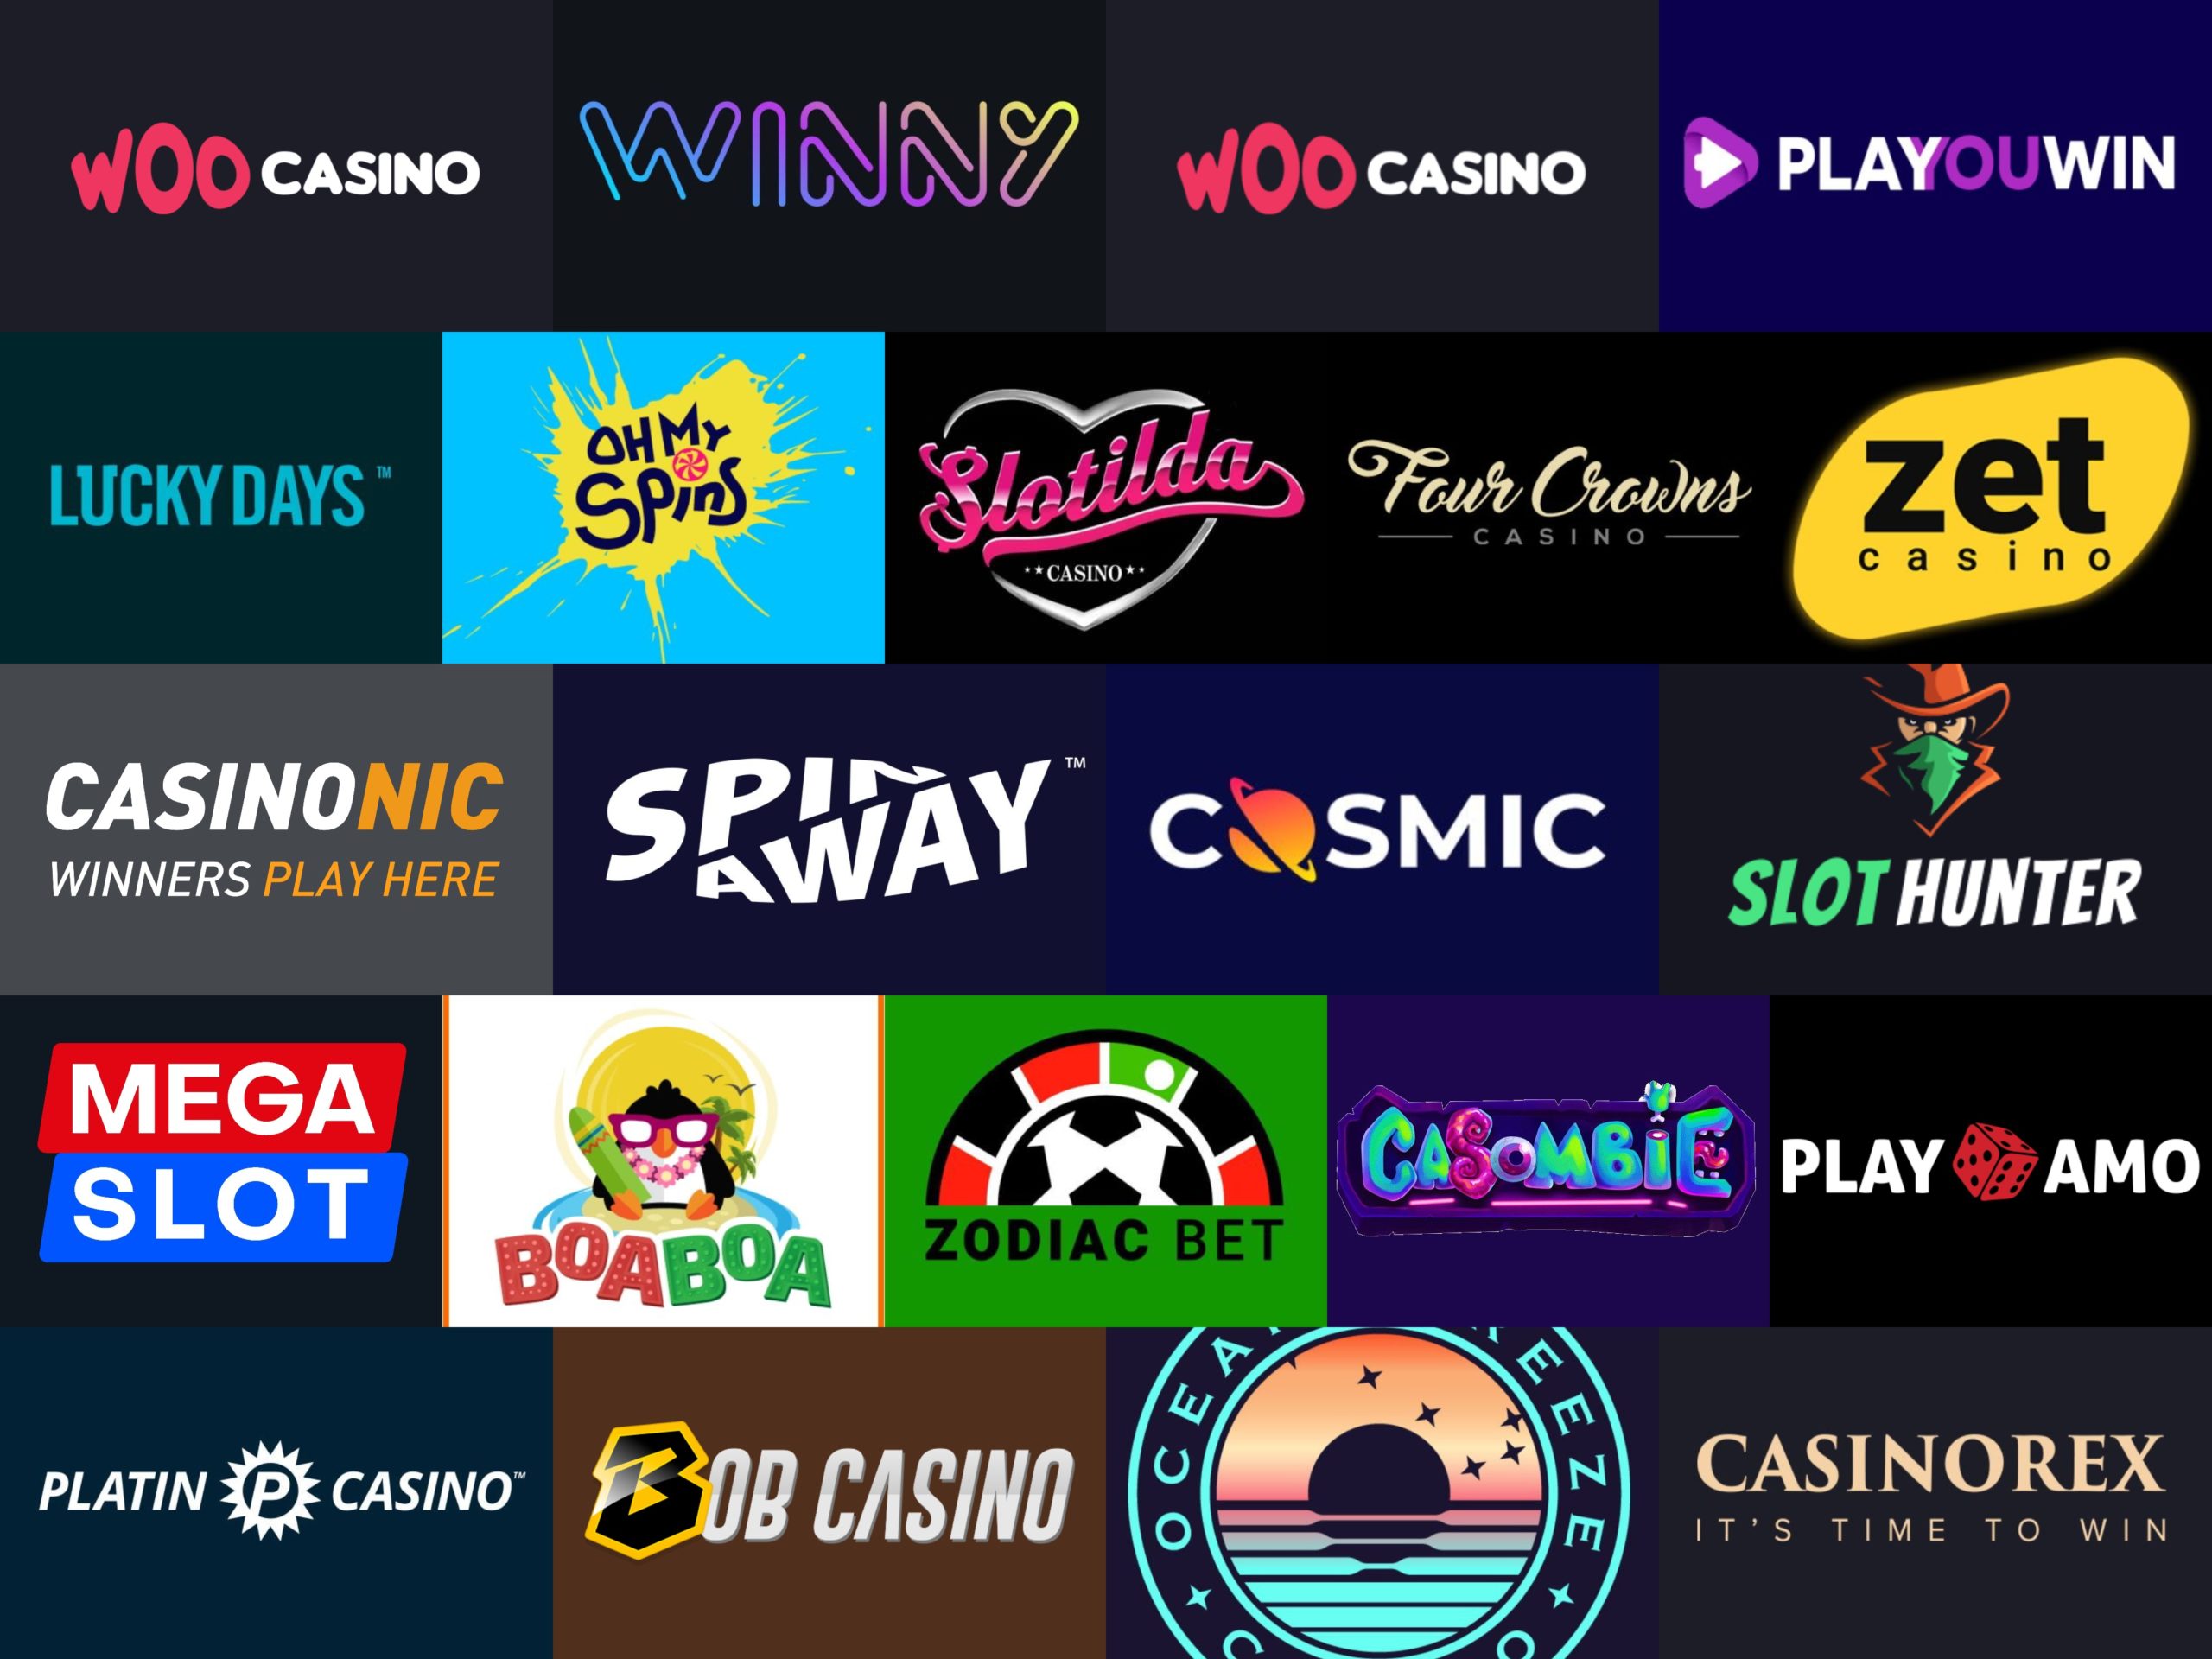 8 Wege zum Online Casinos, ohne Ihre Bank zu sprengen